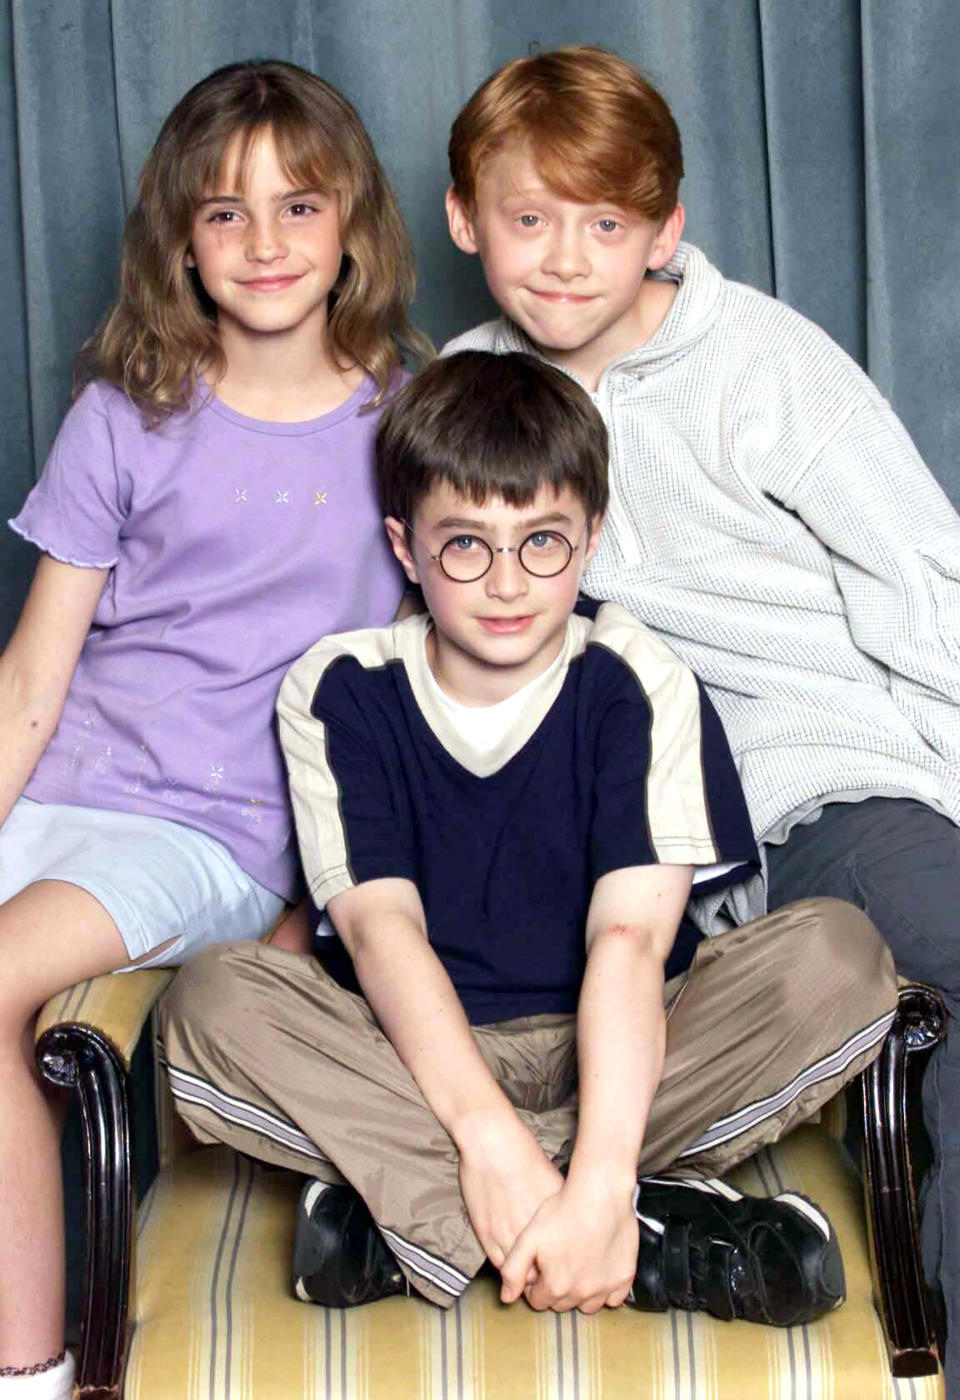 LONDRES - 23 DE AGOSTO: Los actores Emma Watson, Rupert Grint y Daniel Radcliffe asisten a una sesión fotográfica para presentar el nuevo elenco de las películas de Harry Potter, Londres, 23 de agosto de 2000. (Foto de Dave Hogan/Getty Images)